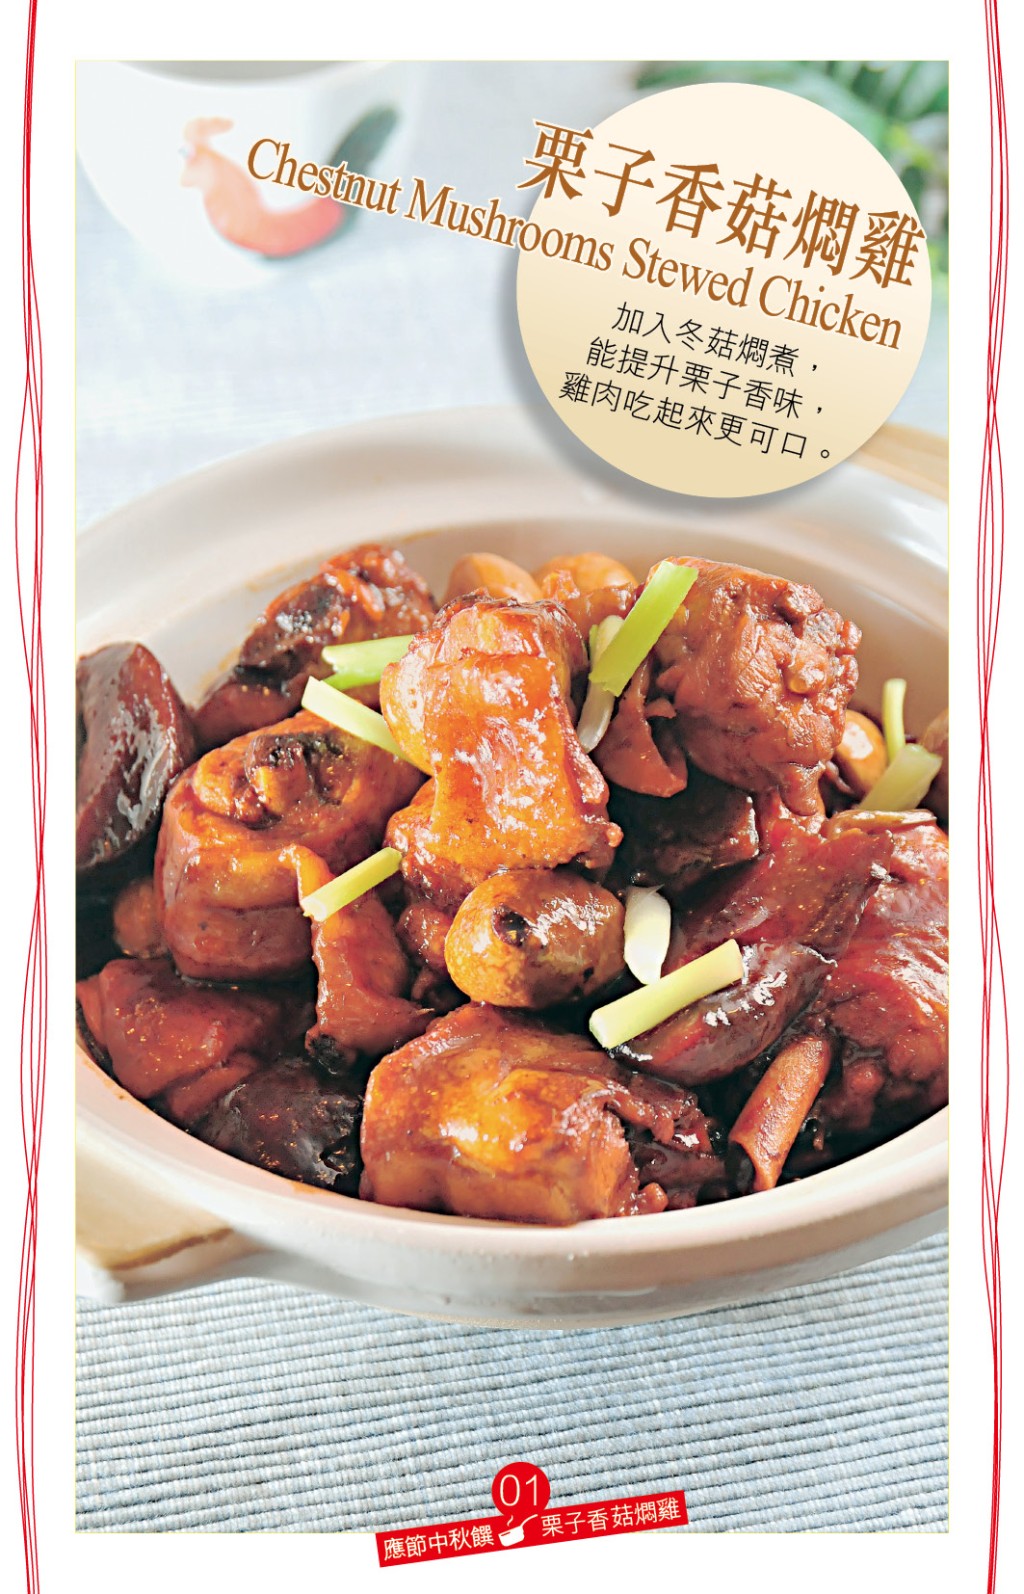 栗子香菇燜雞 鮮甜家常菜